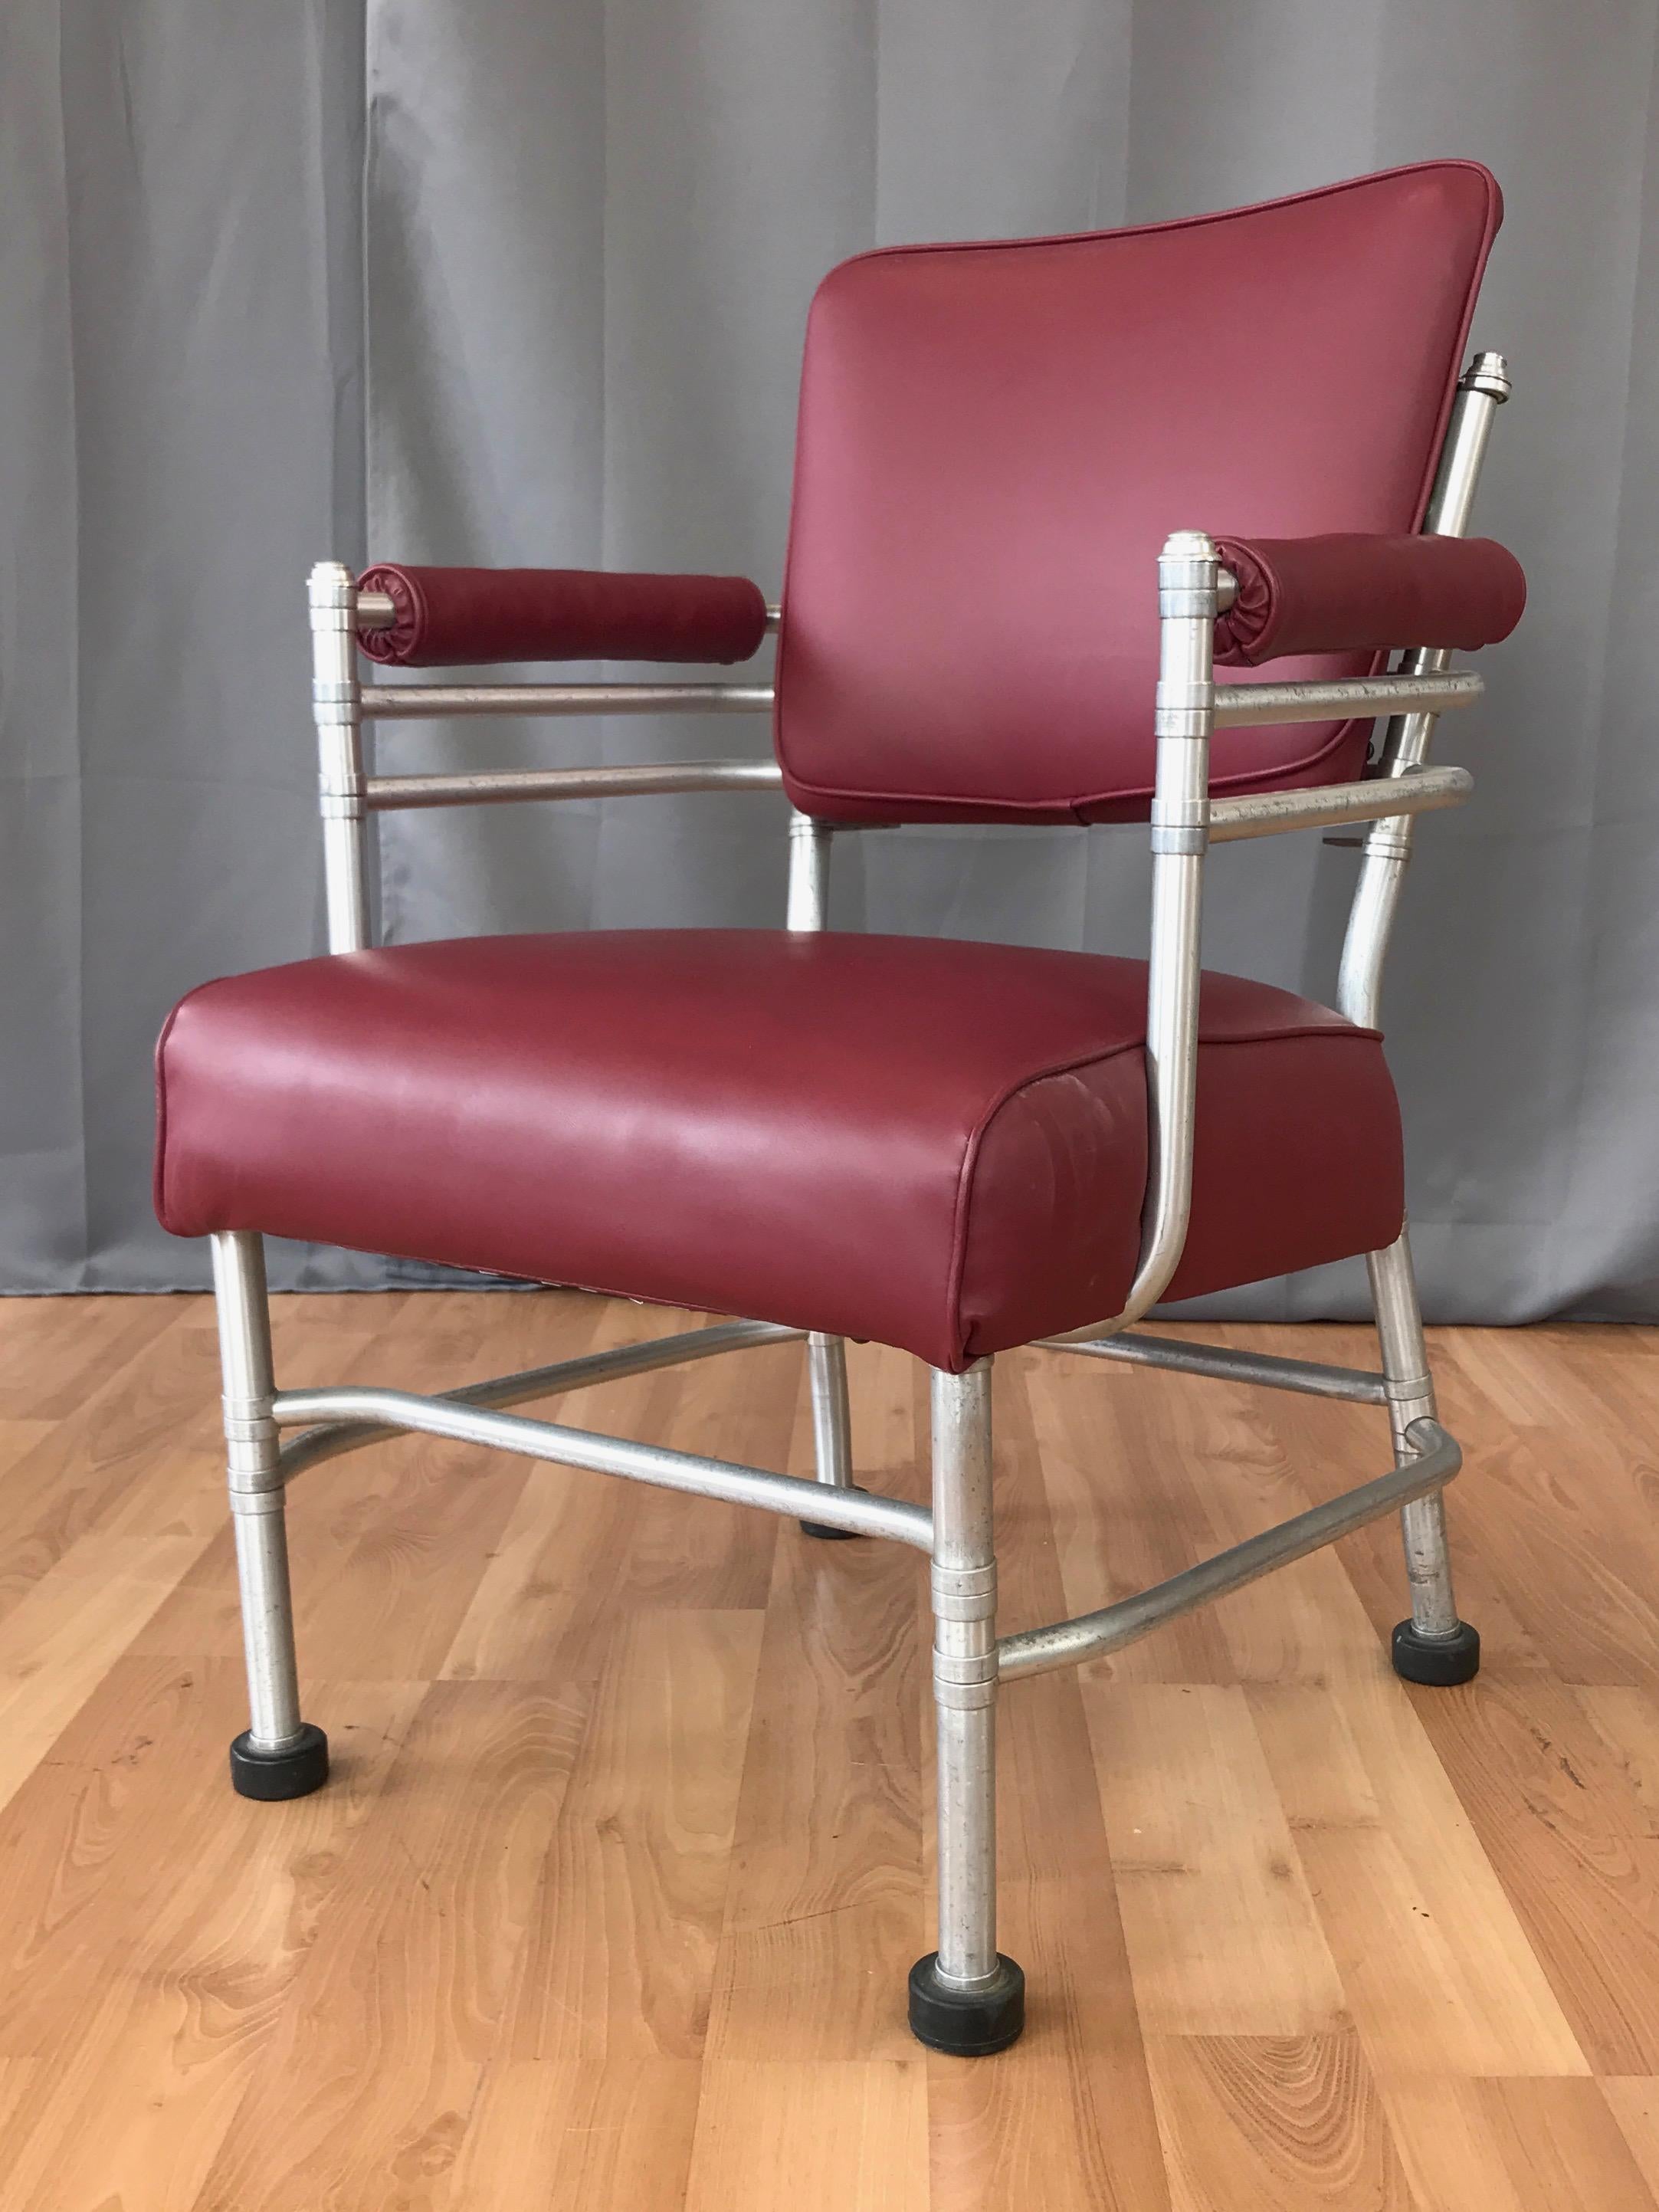 Un rare fauteuil Art déco en aluminium datant du milieu des années 1930, réalisé par l'important designer américain Warren McArthur.

Le cadre tubulaire en aluminium anodisé composé de plusieurs pièces et d'un squelette complexe de tiges de support